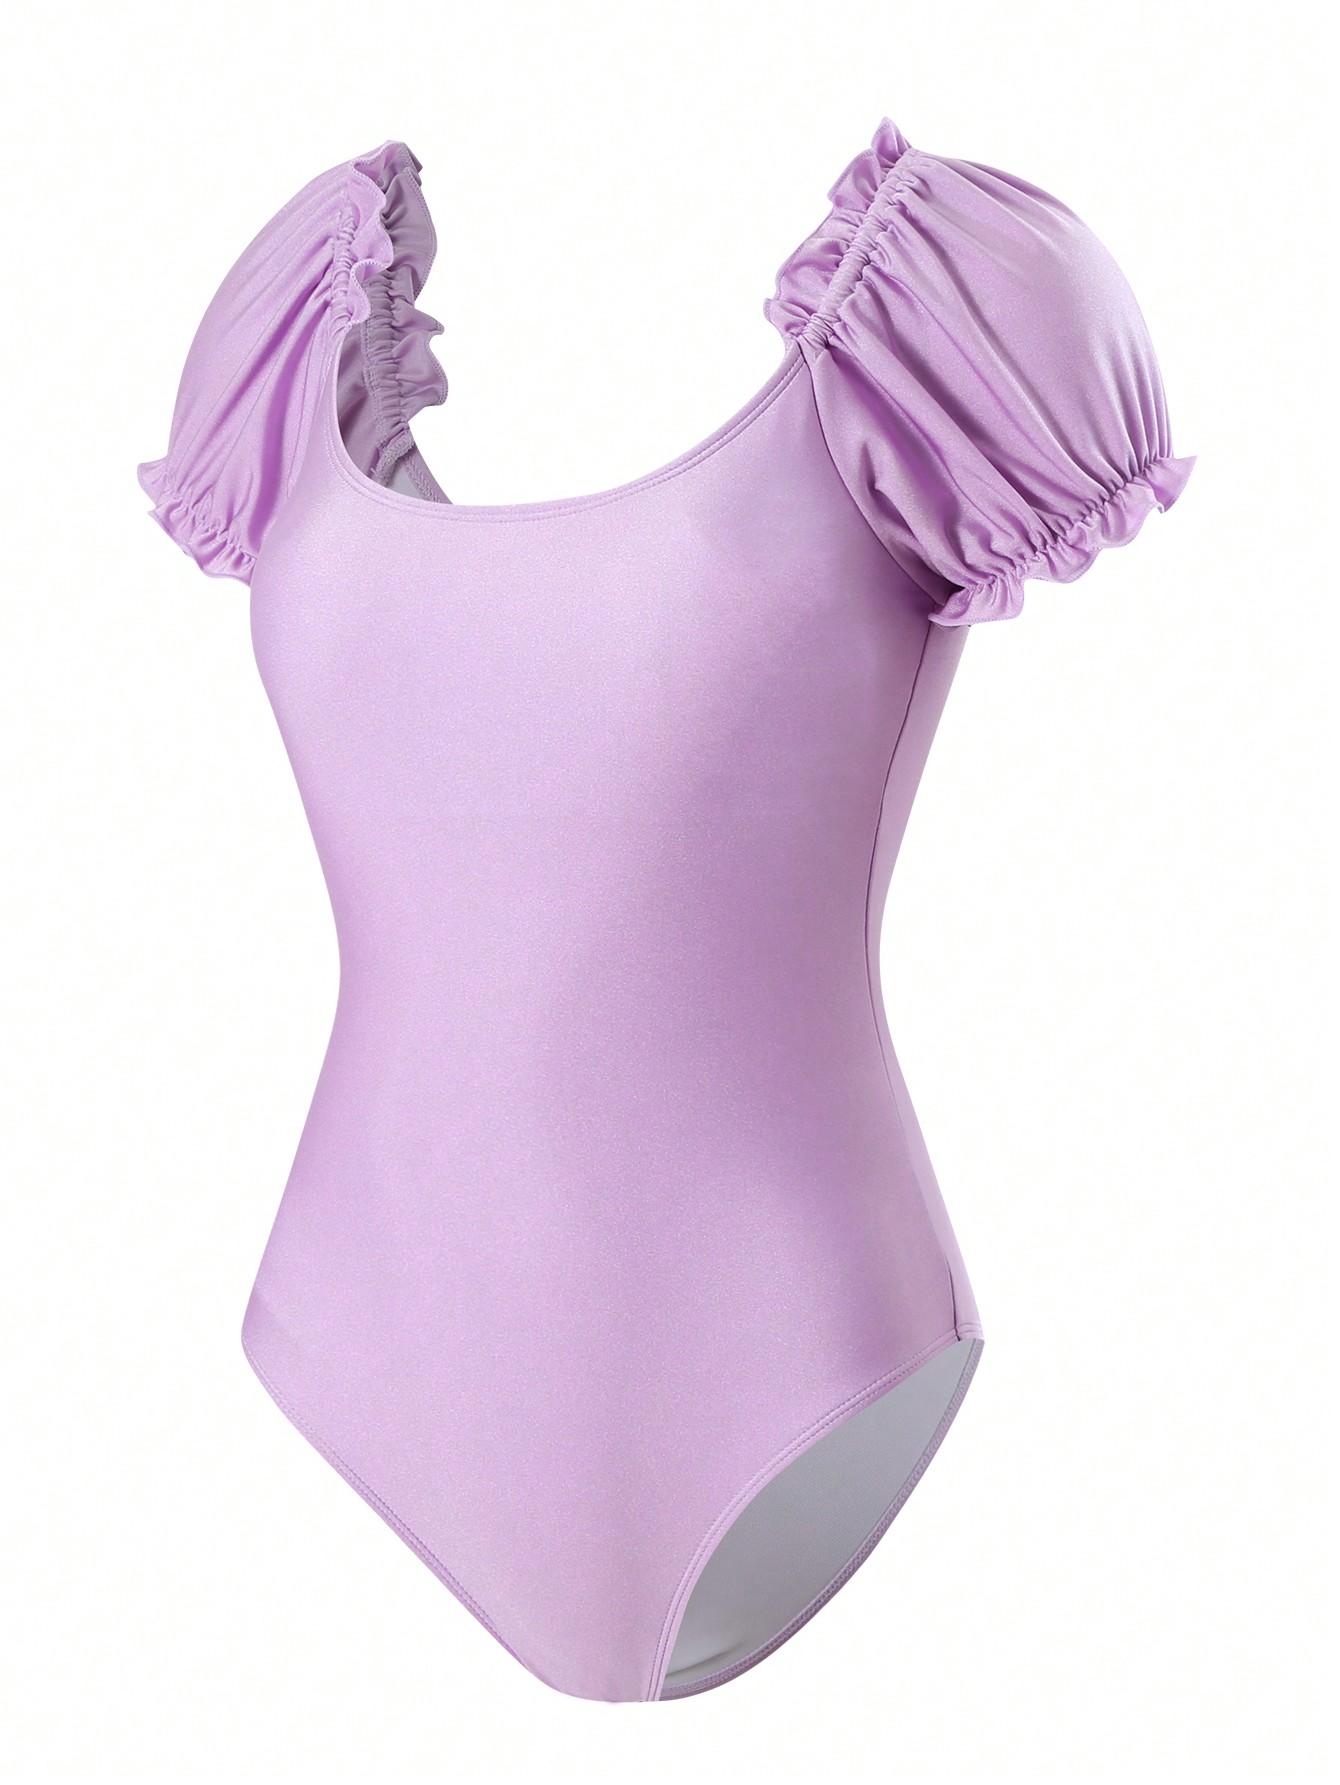 fioletowy jednoczęściowy strój kąpielowy połysk